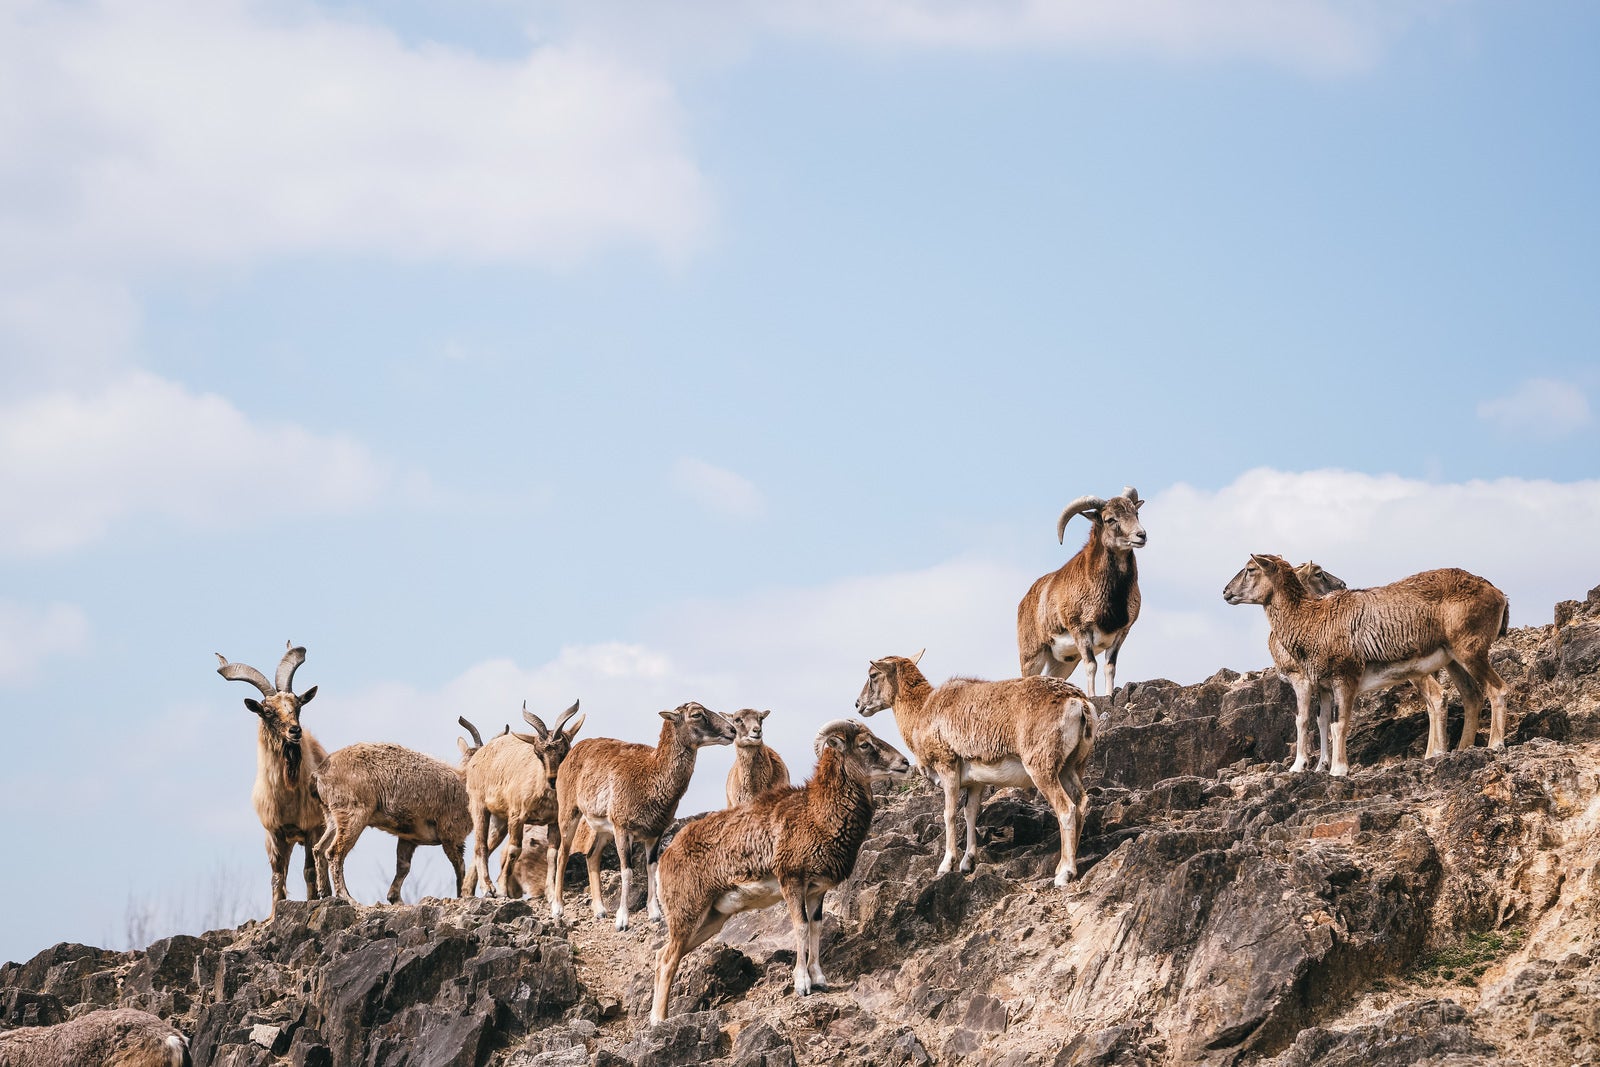 「岩場を徘徊するヤギの群れ」の写真